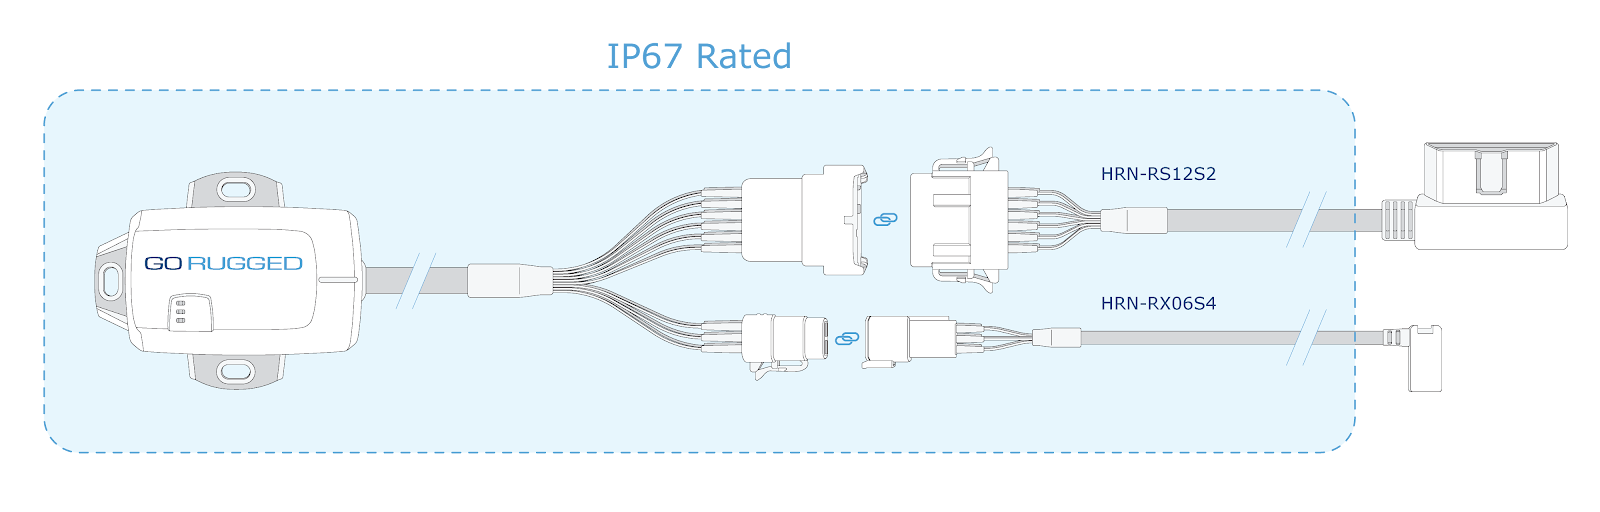 go-rugged-ip67-rating-diagram-v1.png